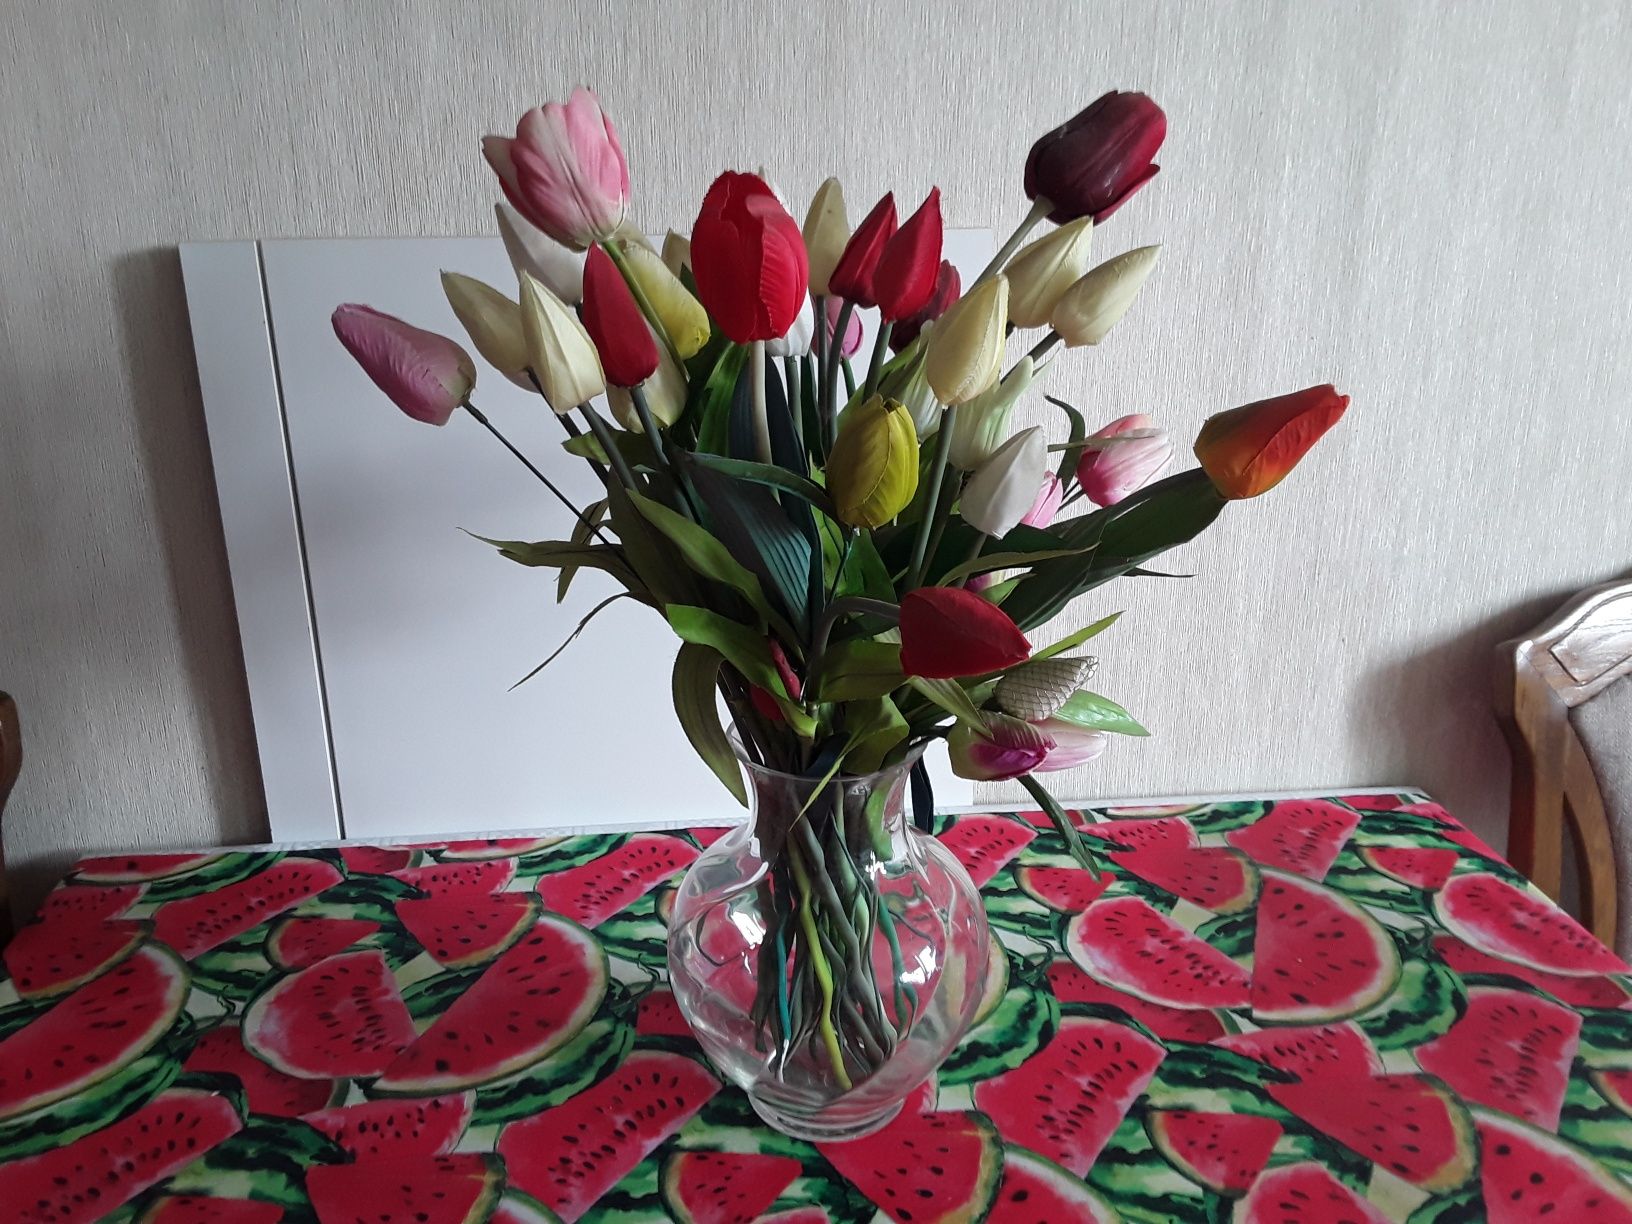 kompozycja tulipanow w orginalnym szklanym wazonie tanio